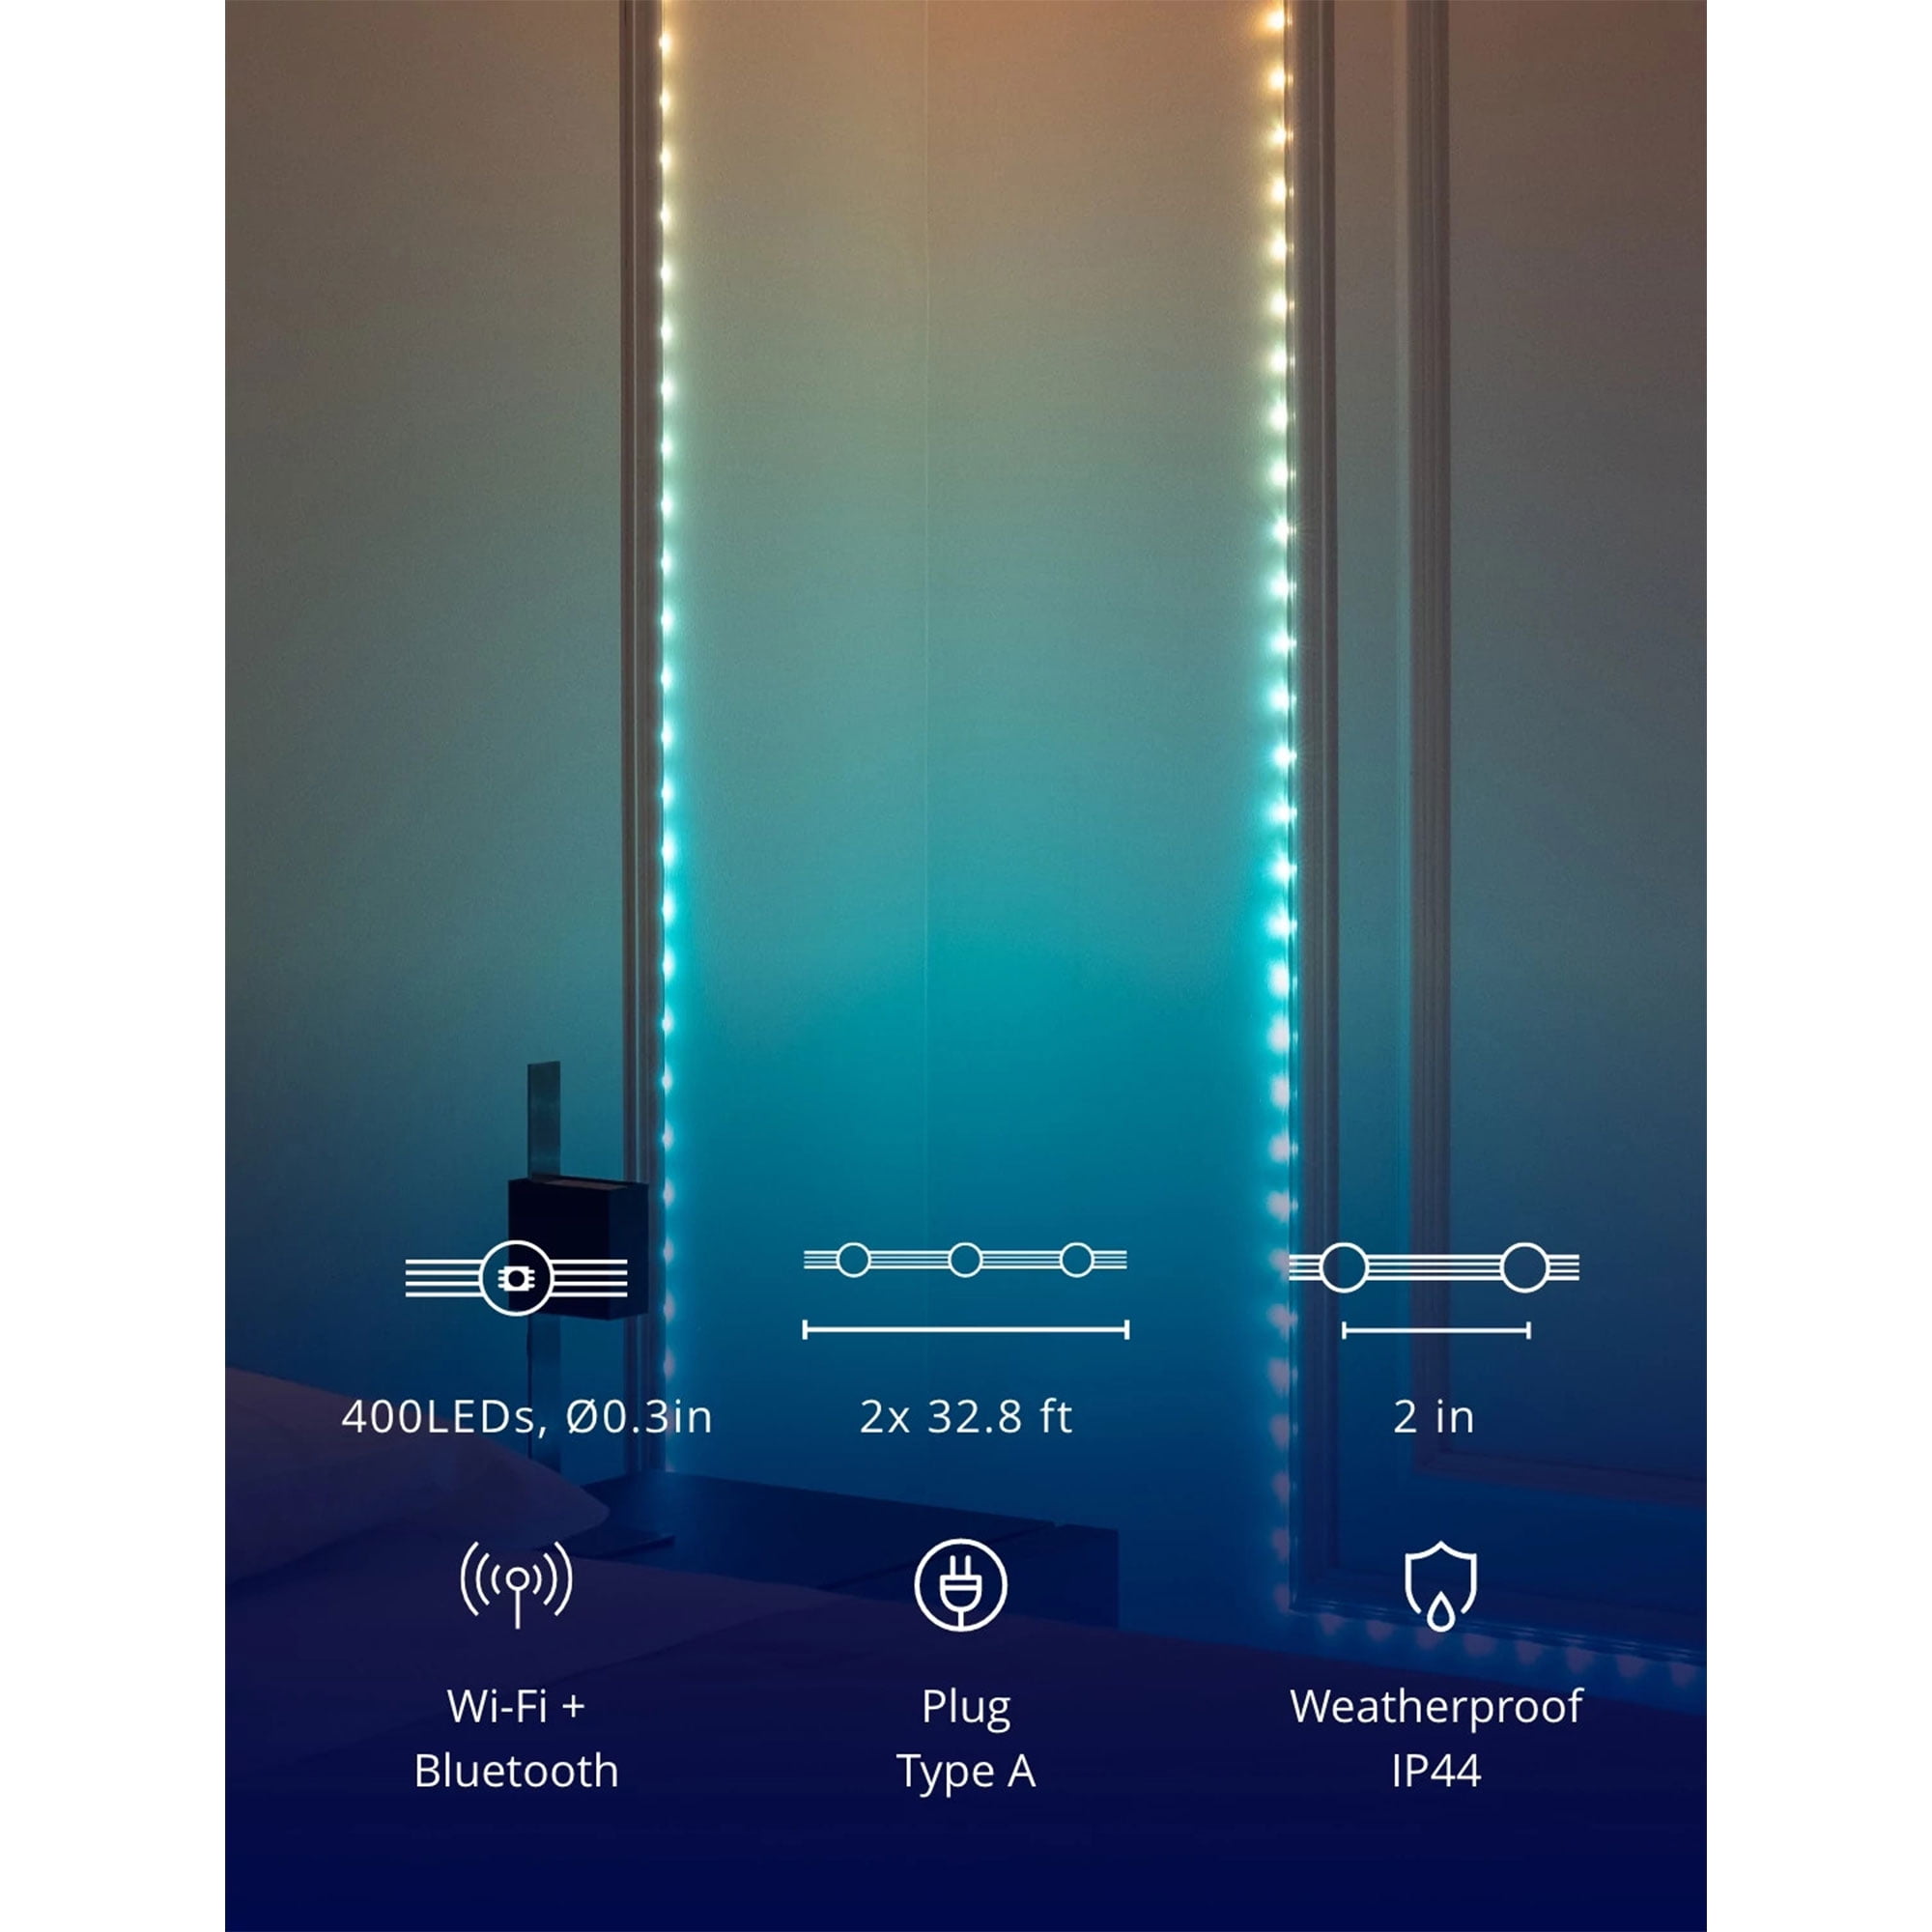 Twinkly Dots 200 RGB LED USB Flexible Light String (Gen II) Multi  TWD200STP-TUS - Best Buy